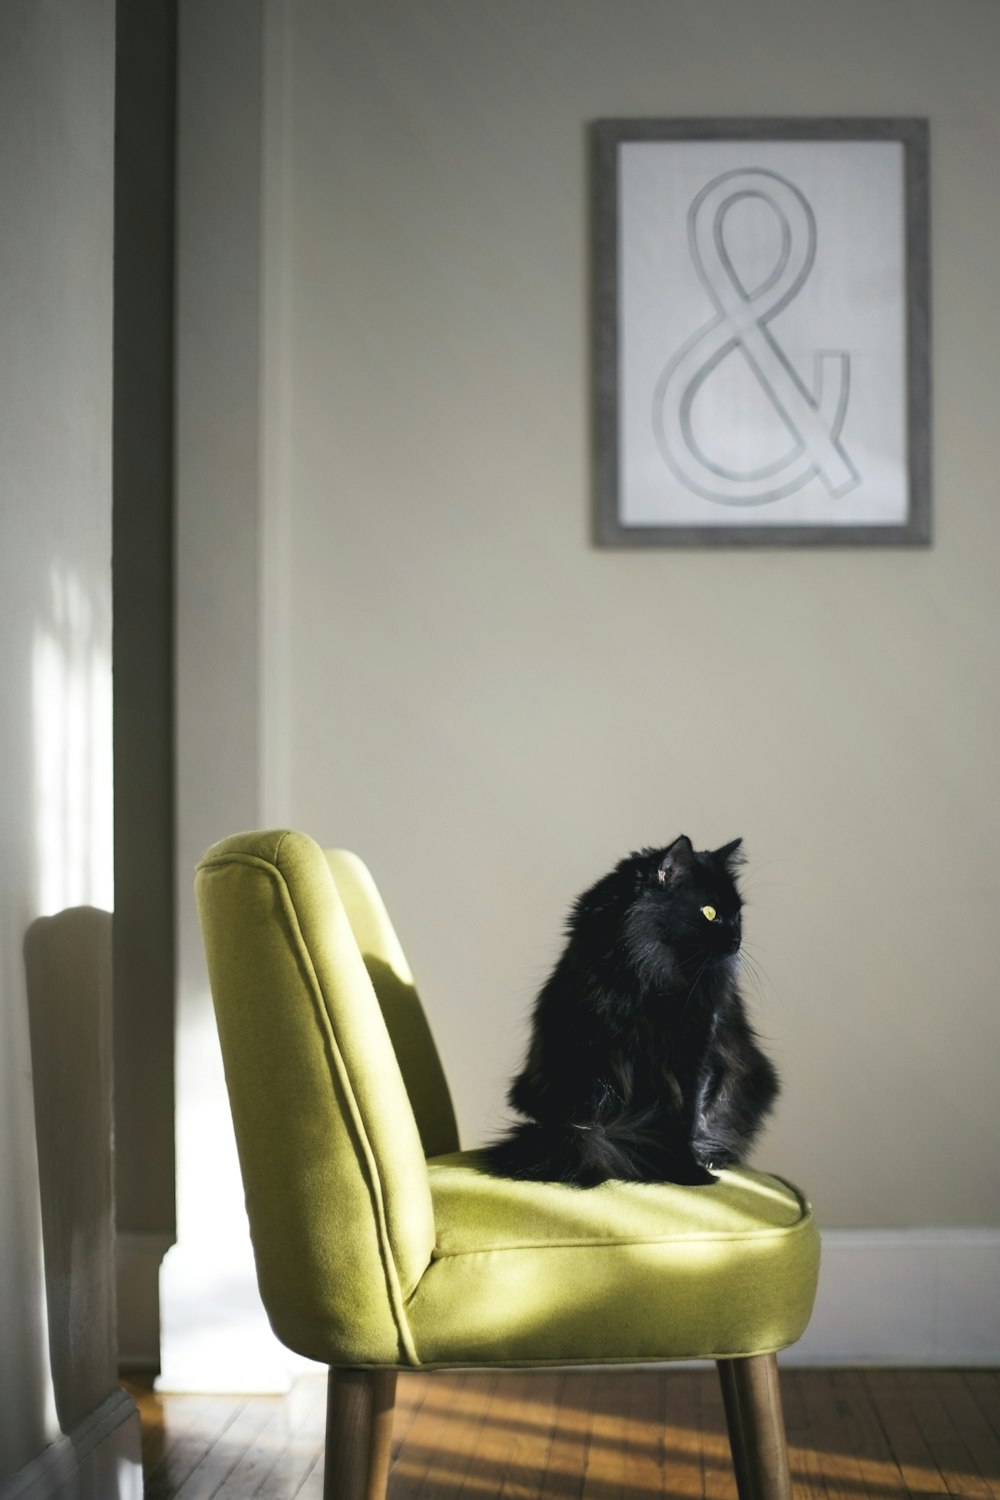 schwarze Katze sitzt auf grünem Sofa, das von Sonnenlicht getroffen wird